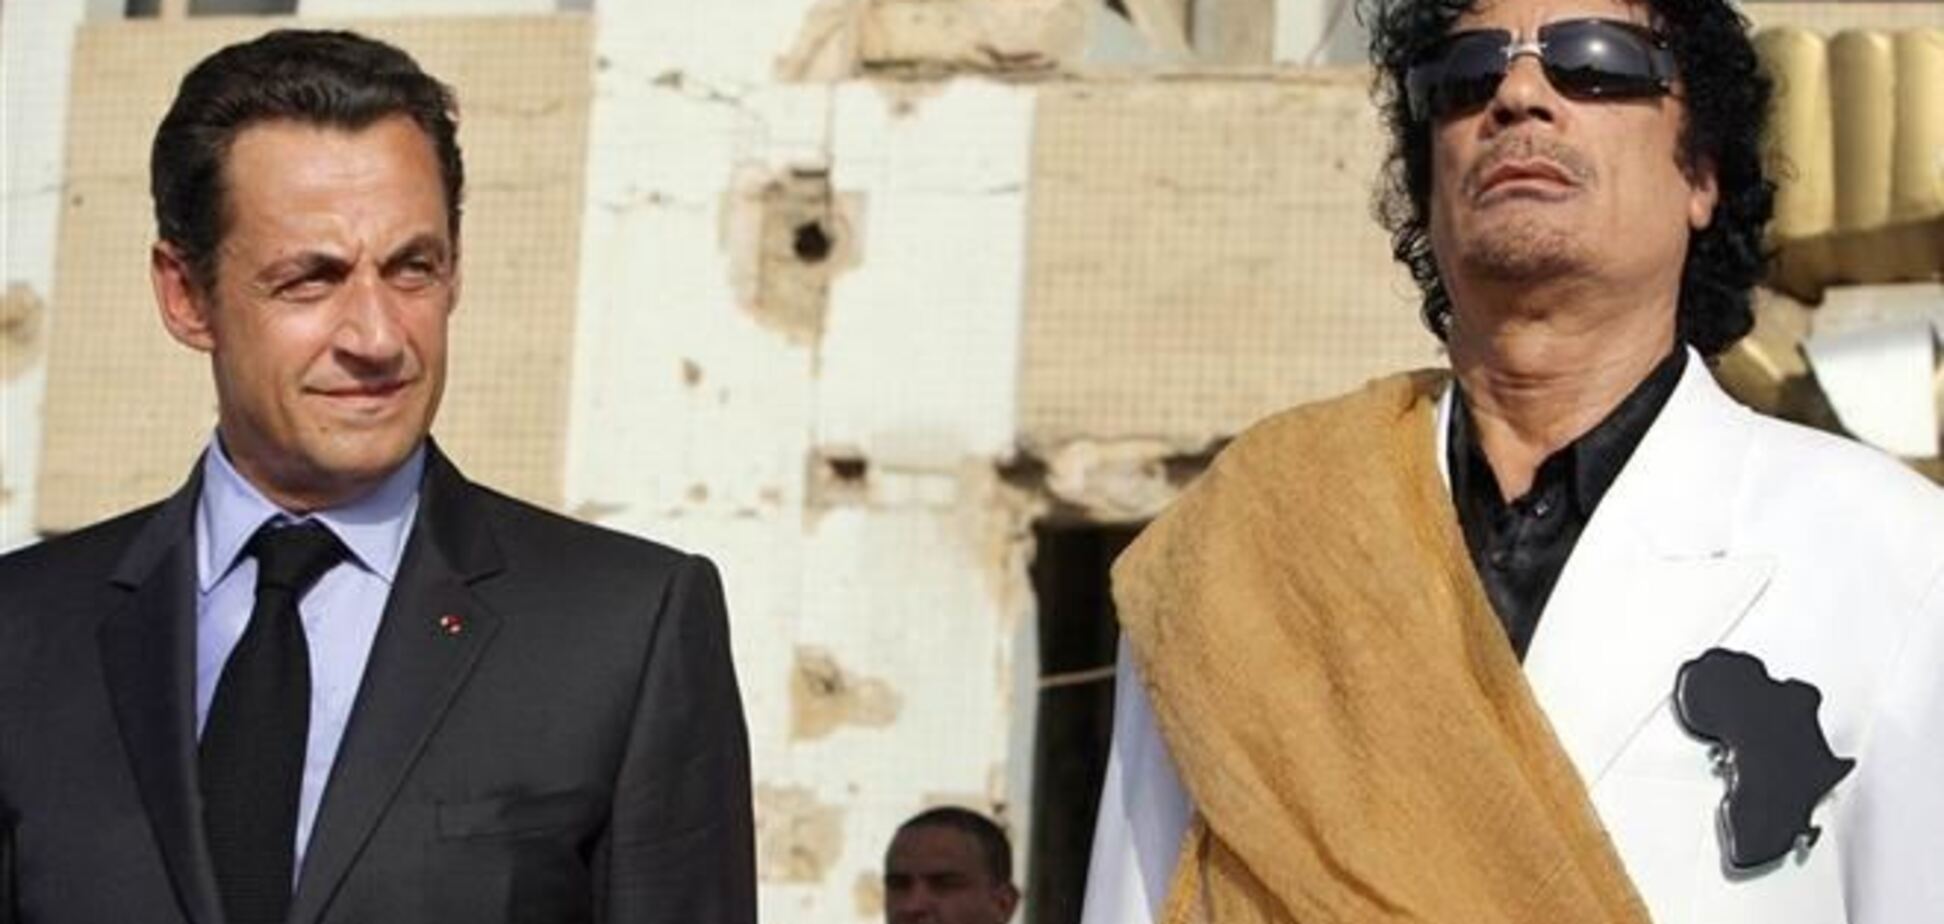 Французский телеканал показал интервью Каддафи о финансировании кампании Саркози